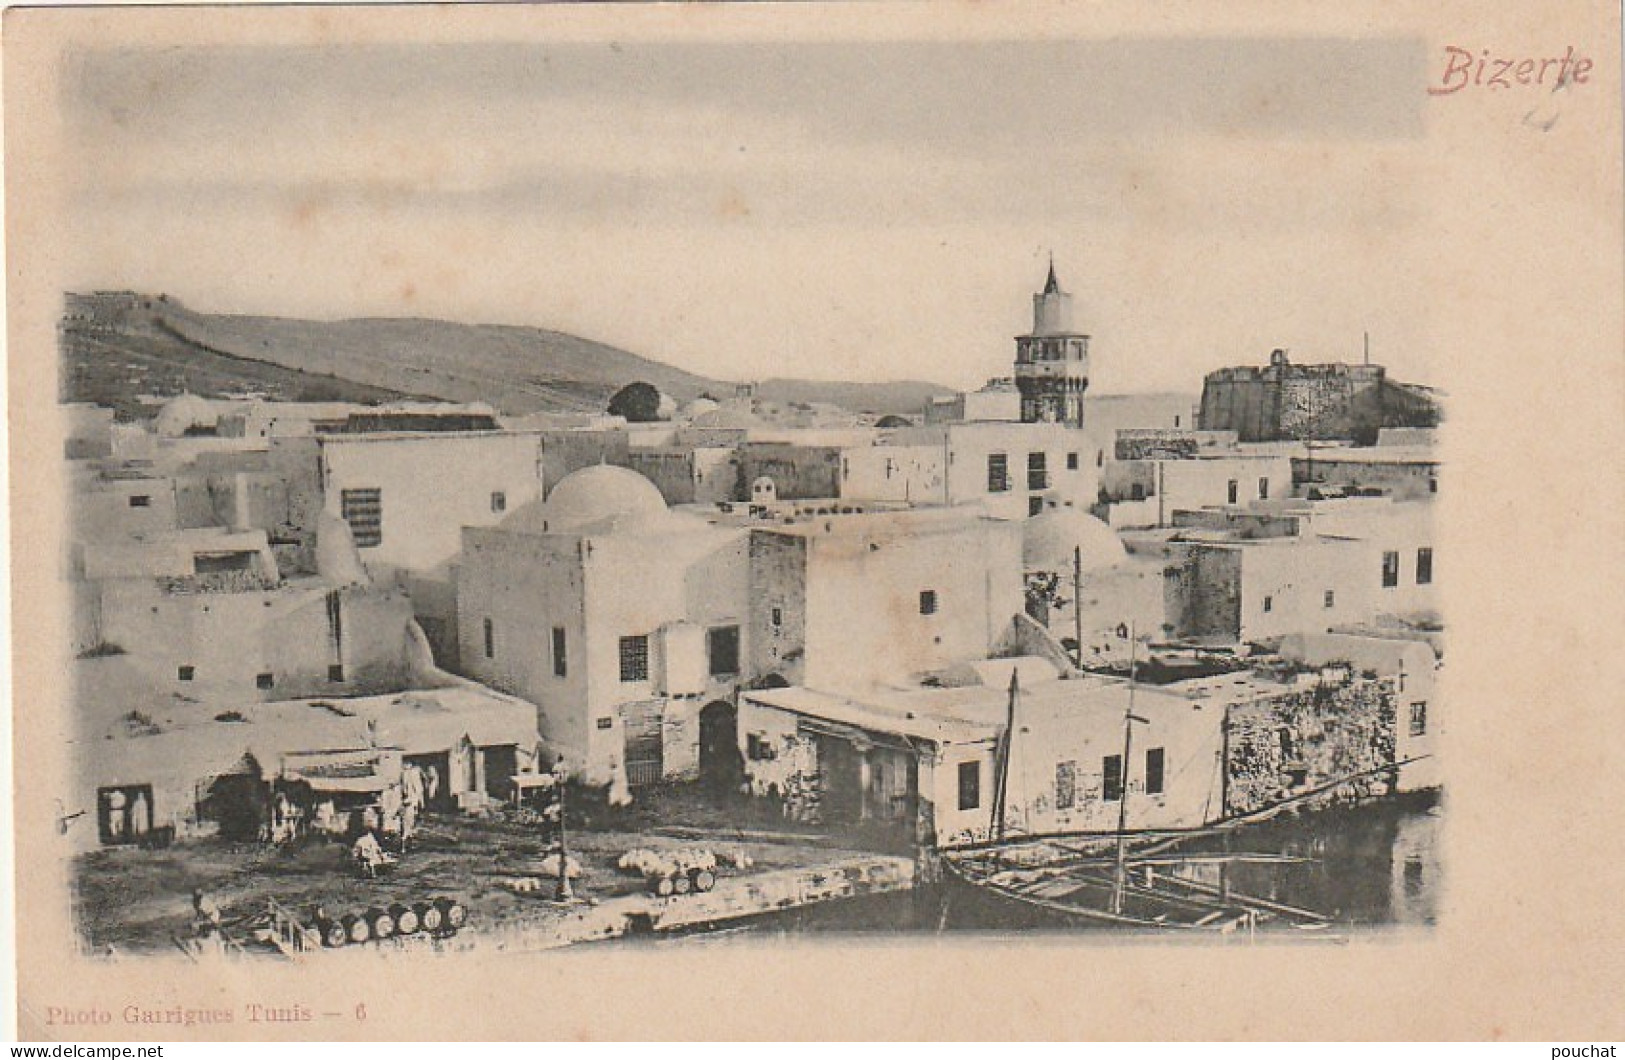 ZY 103- BIZERTE  ( TUNISIE ) - QUARTIER DU VIEUX PORT -  PHOTO GARRIGUES , TUNIS ( N° 6 )- 2 SCANS - Tunisia